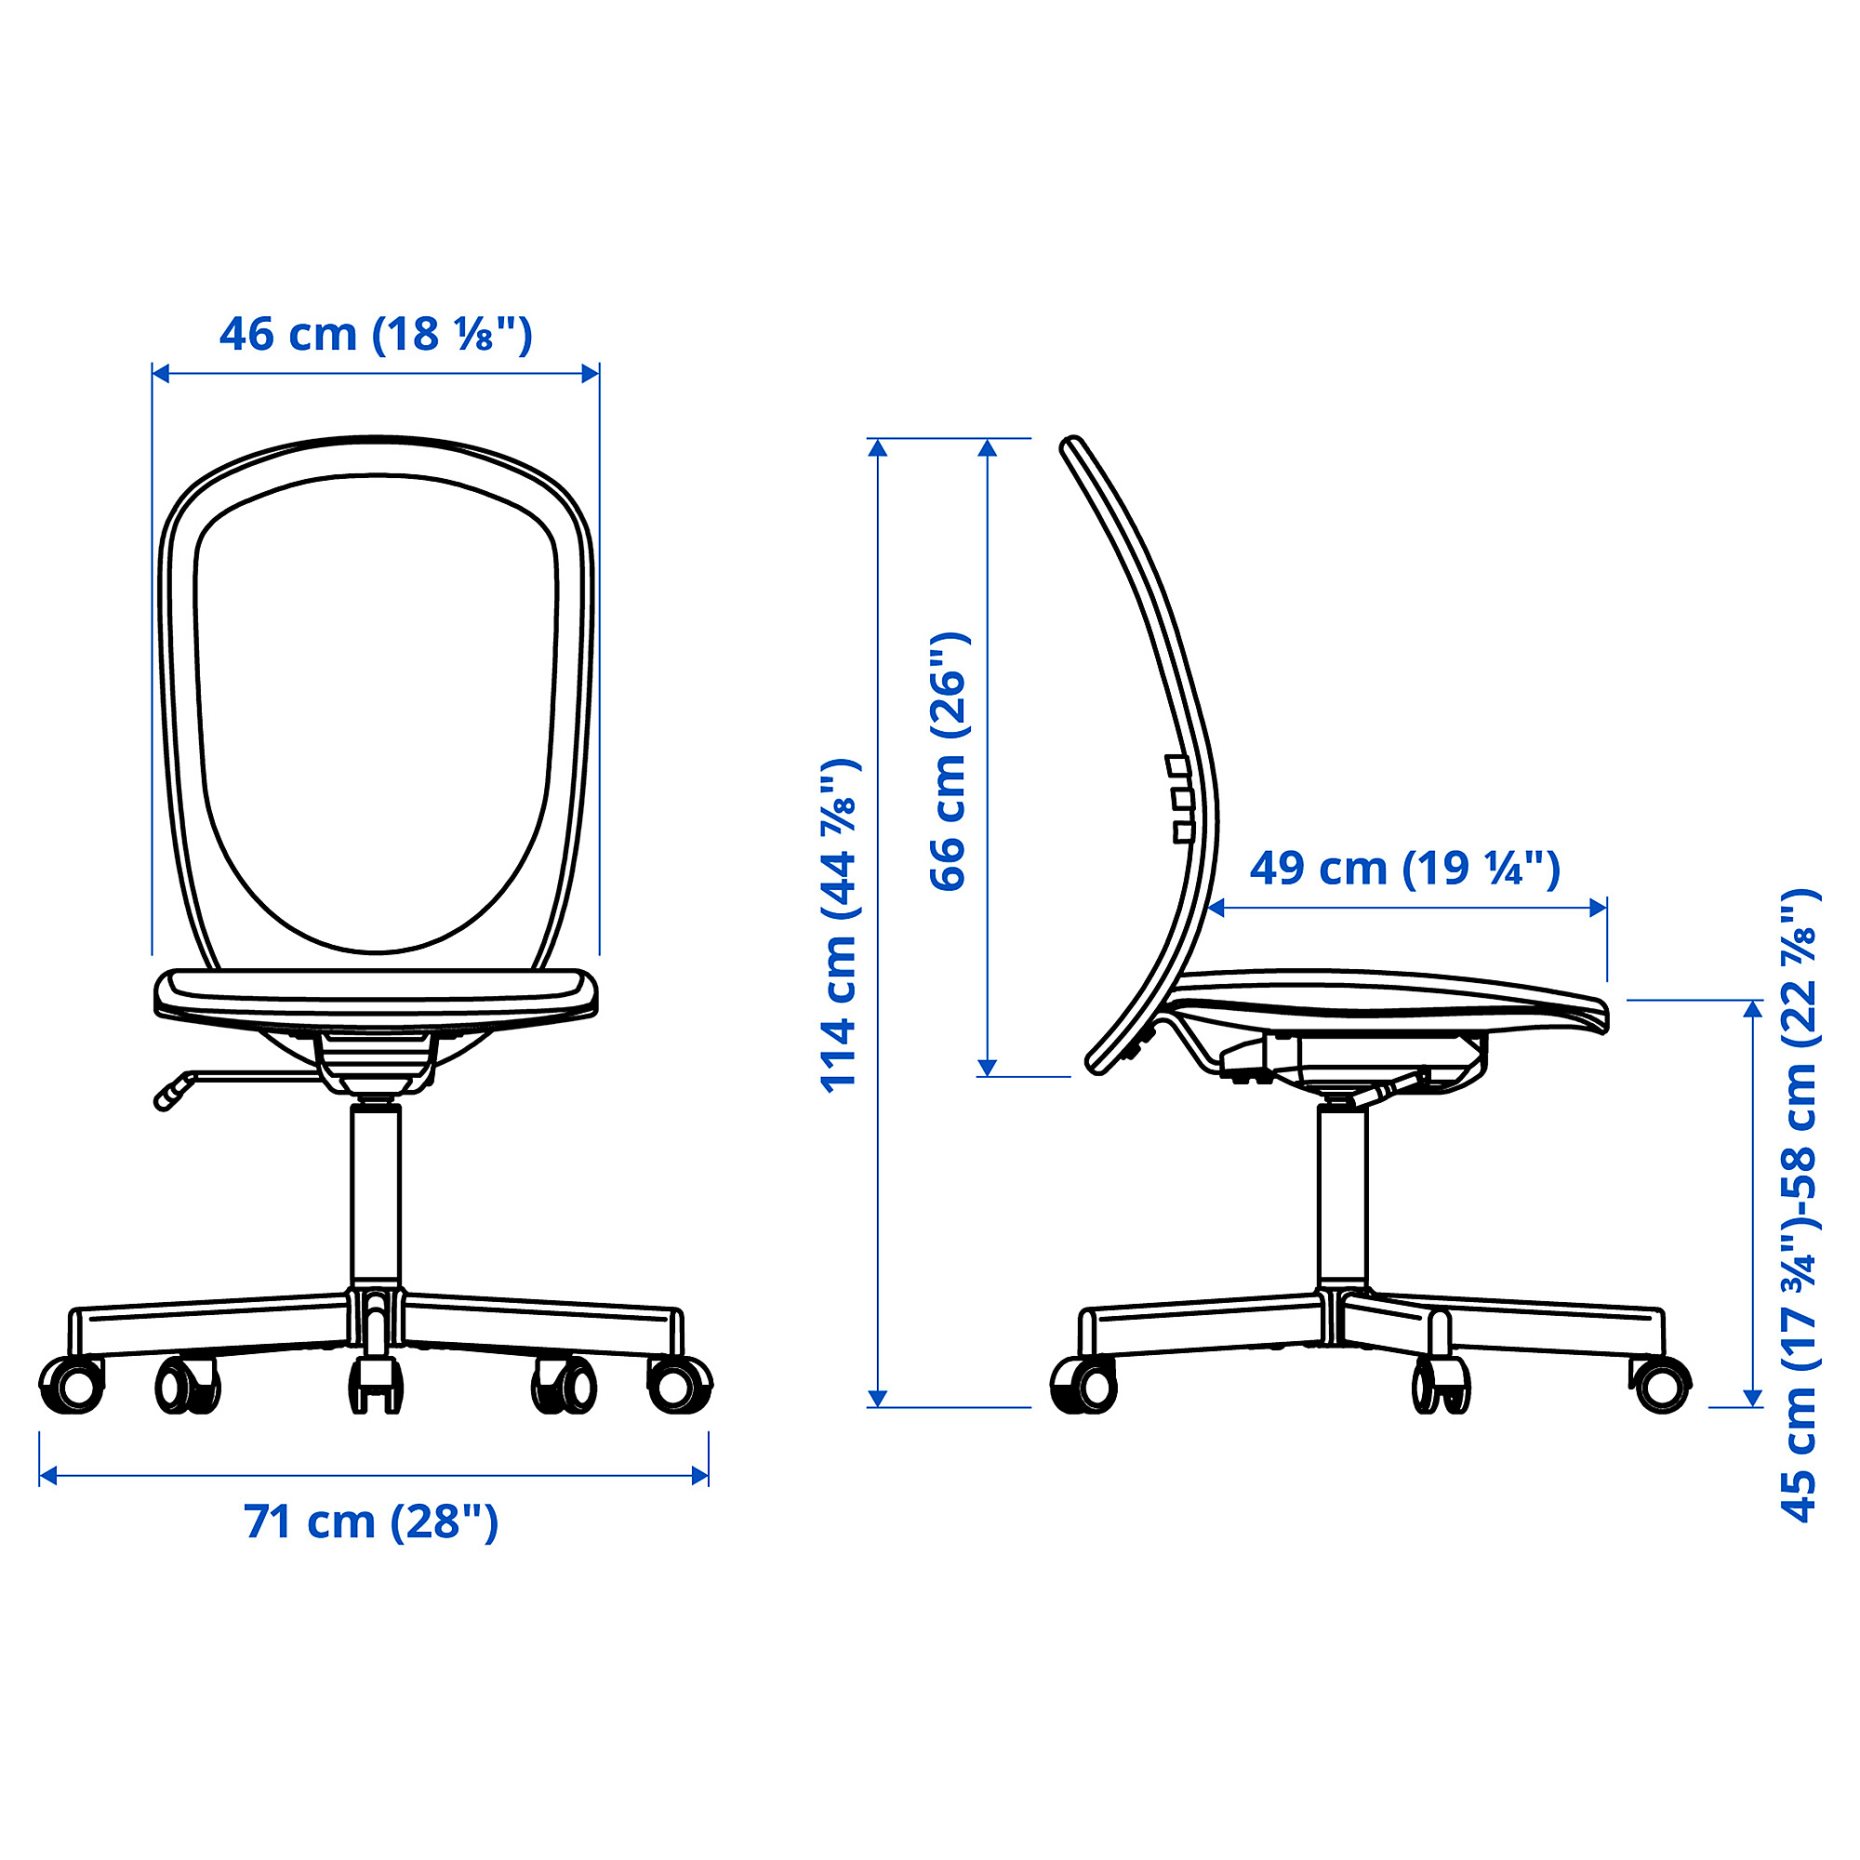 TROTTEN/FLINTAN, σύνθεση γραφείου και αποθήκευσης με περιστρεφόμενη καρέκλα, 594.249.45